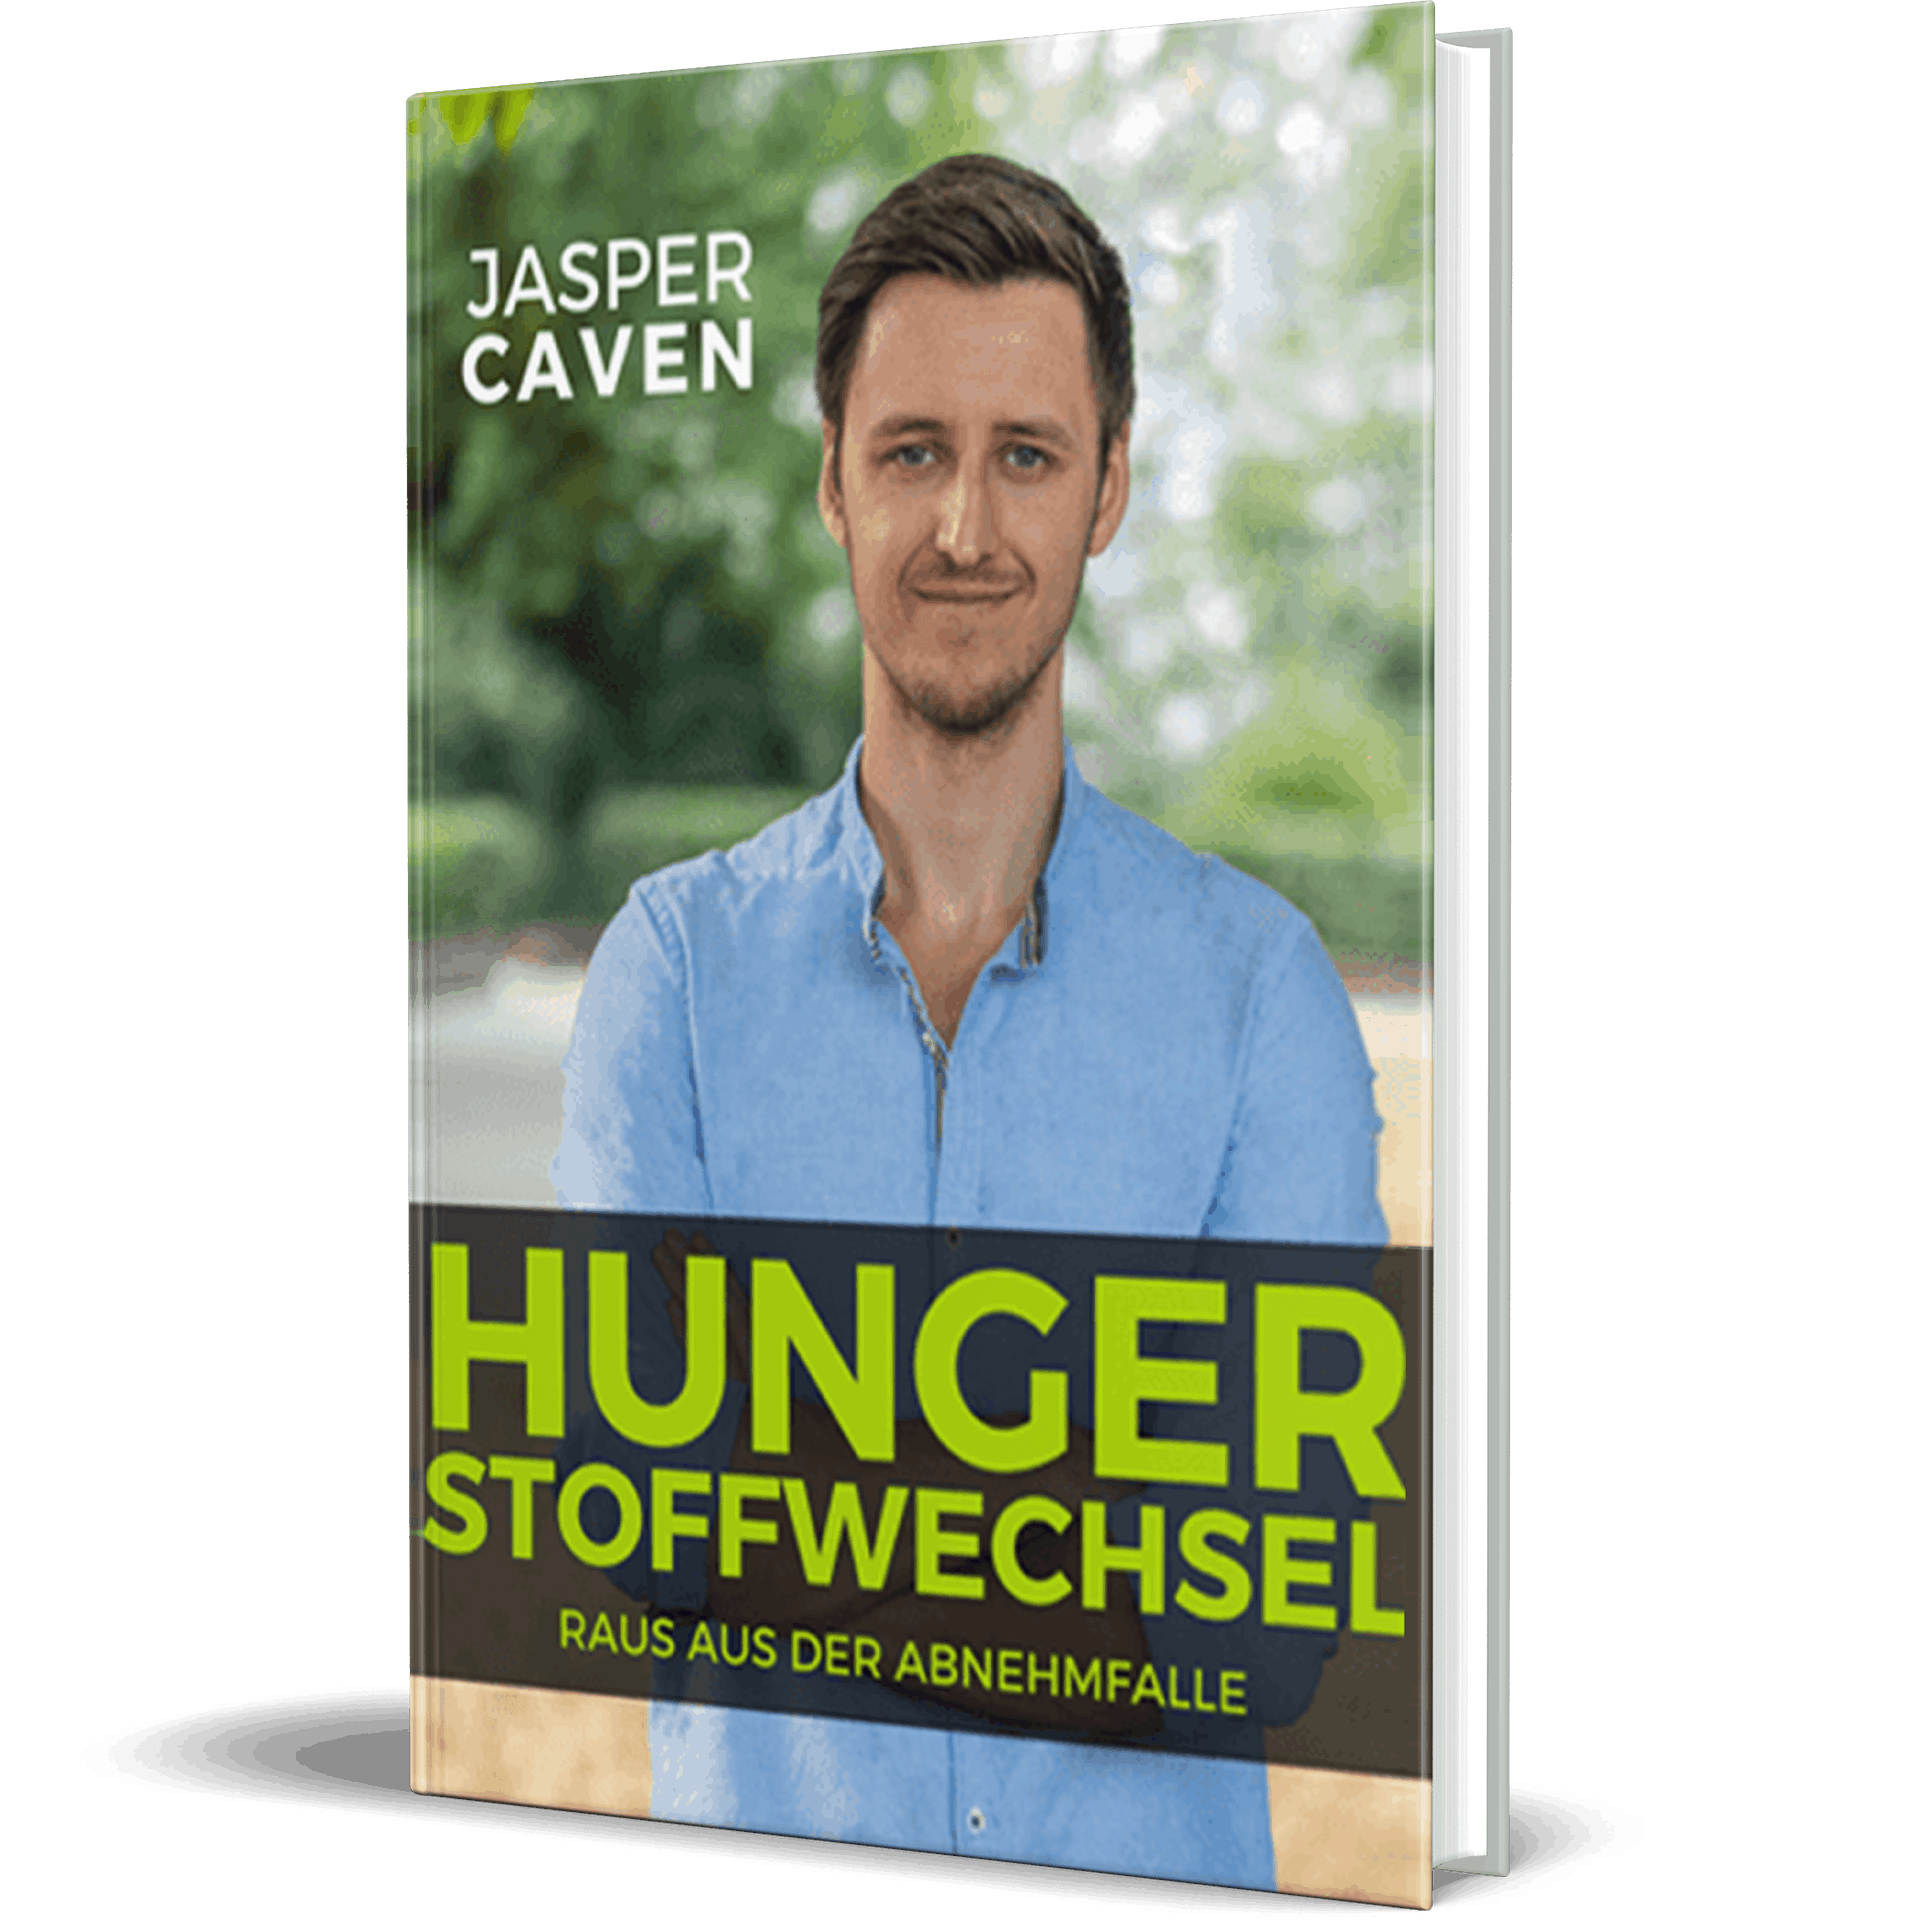 Hungerstoffwechsel Buch Von Jasper Caven Erfahrung